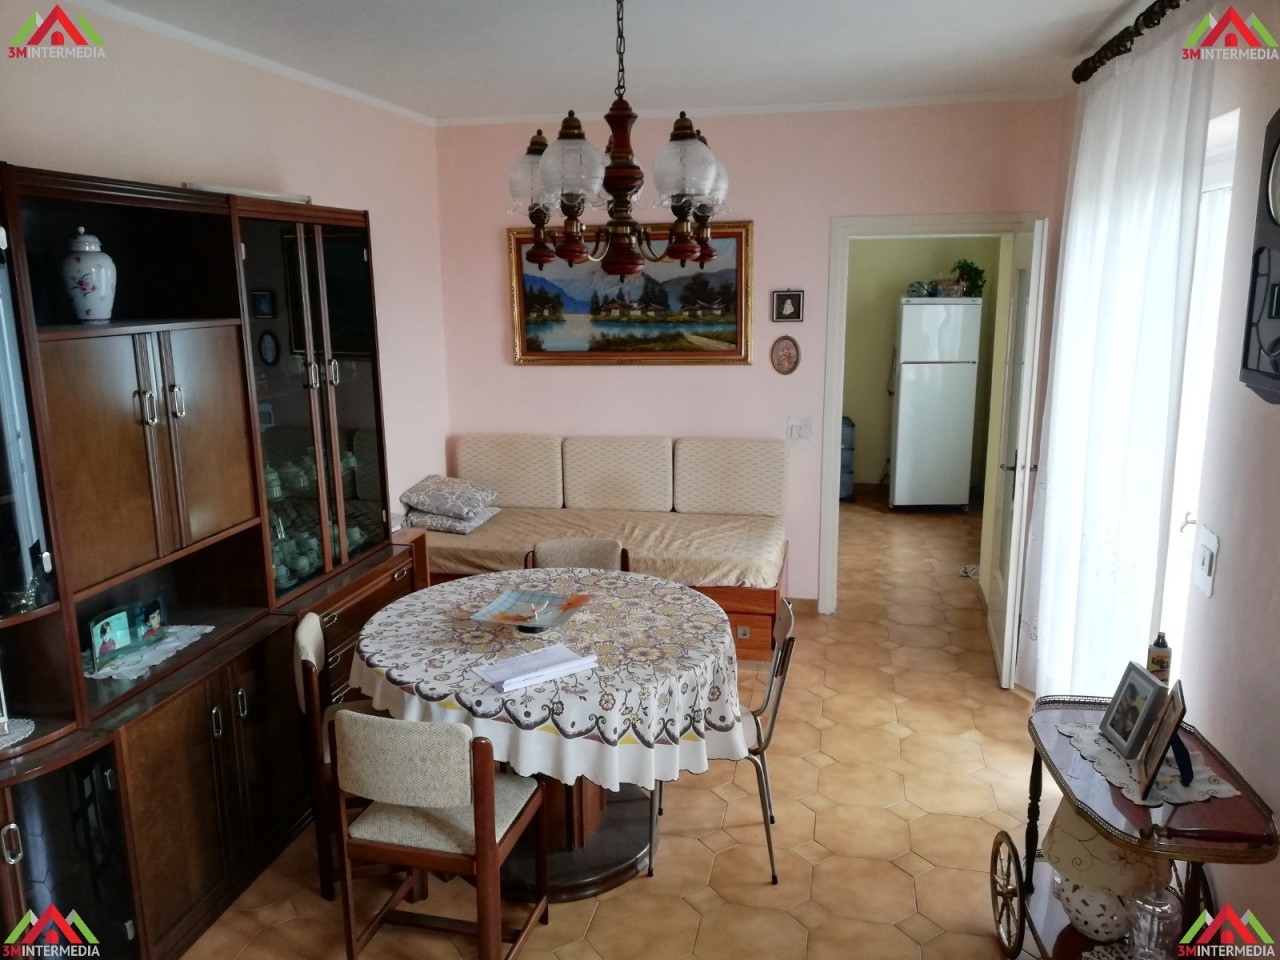 Appartamento in vendita a Lu, 5 locali, prezzo € 38.000 | CambioCasa.it